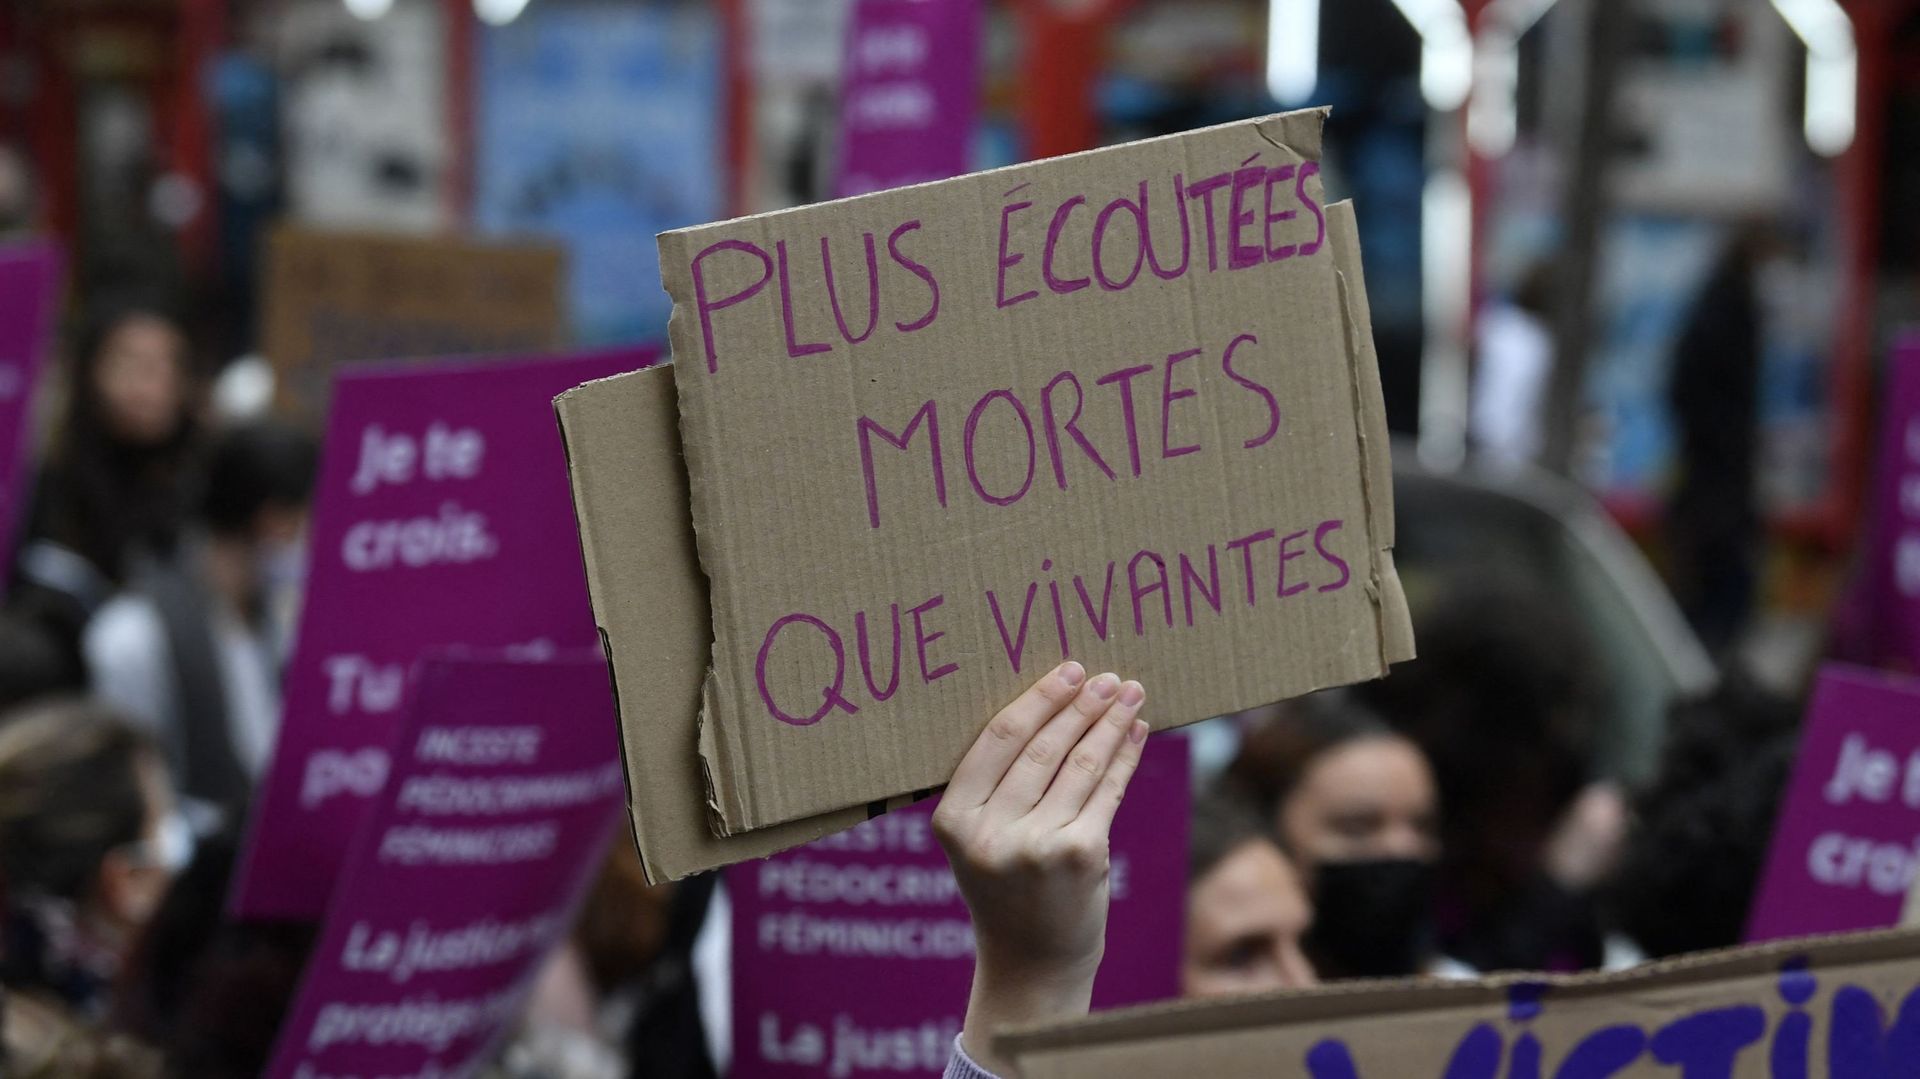 Manifestation organisée à Toulouse ce 21 novembre par le collectif "Nous toutes" pour protester contre les violences faires aux femmes. Photo d’illustration